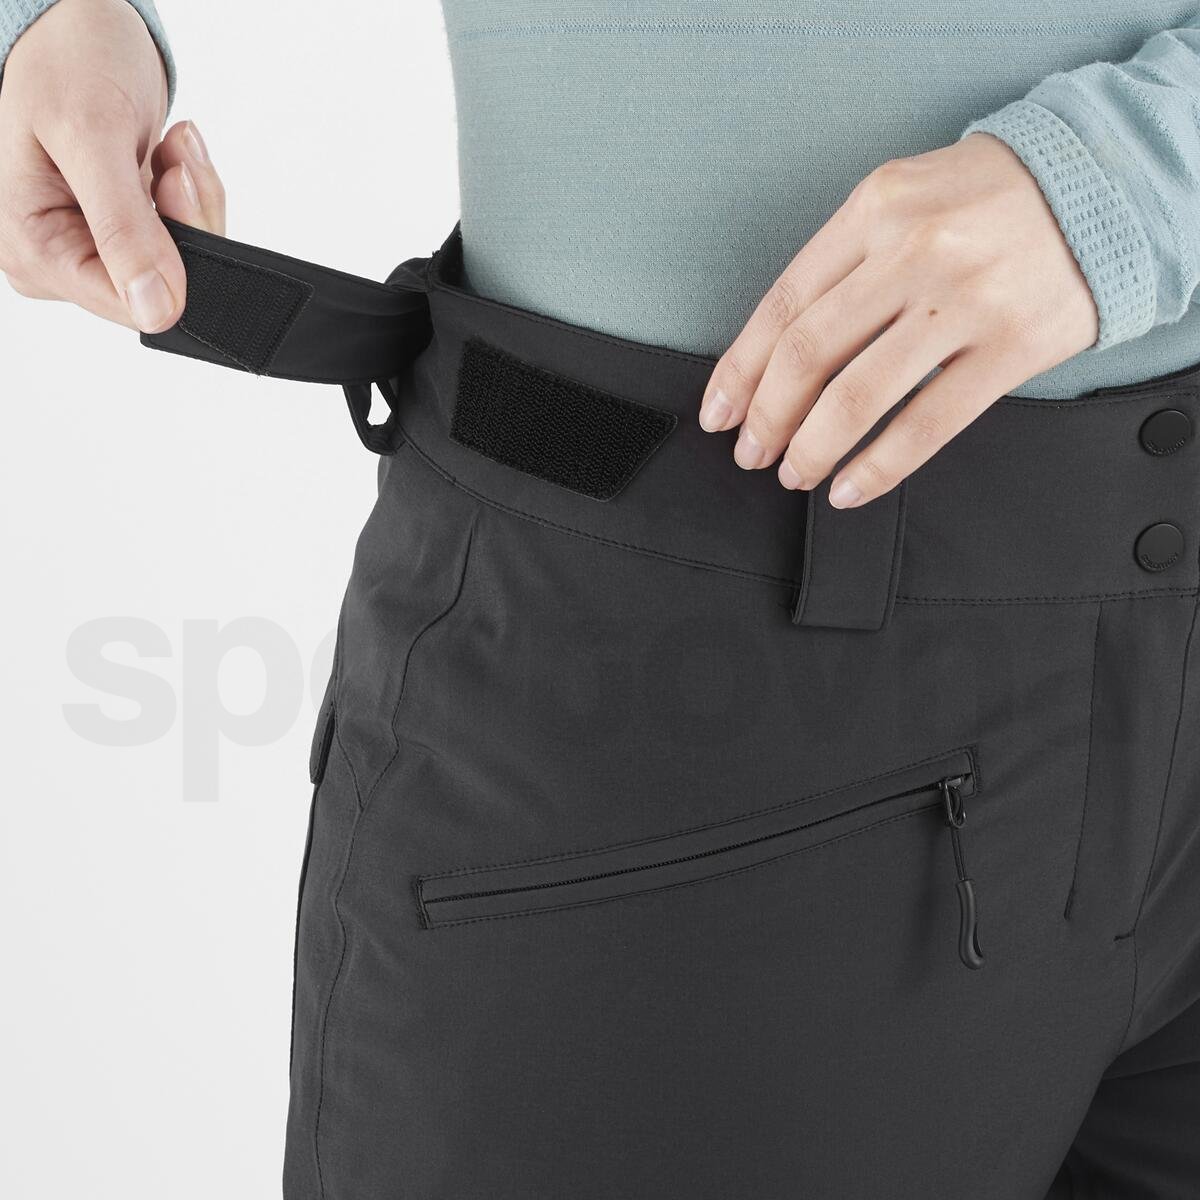 Kalhoty Salomon Edge Pant W - černá (standardní délka)